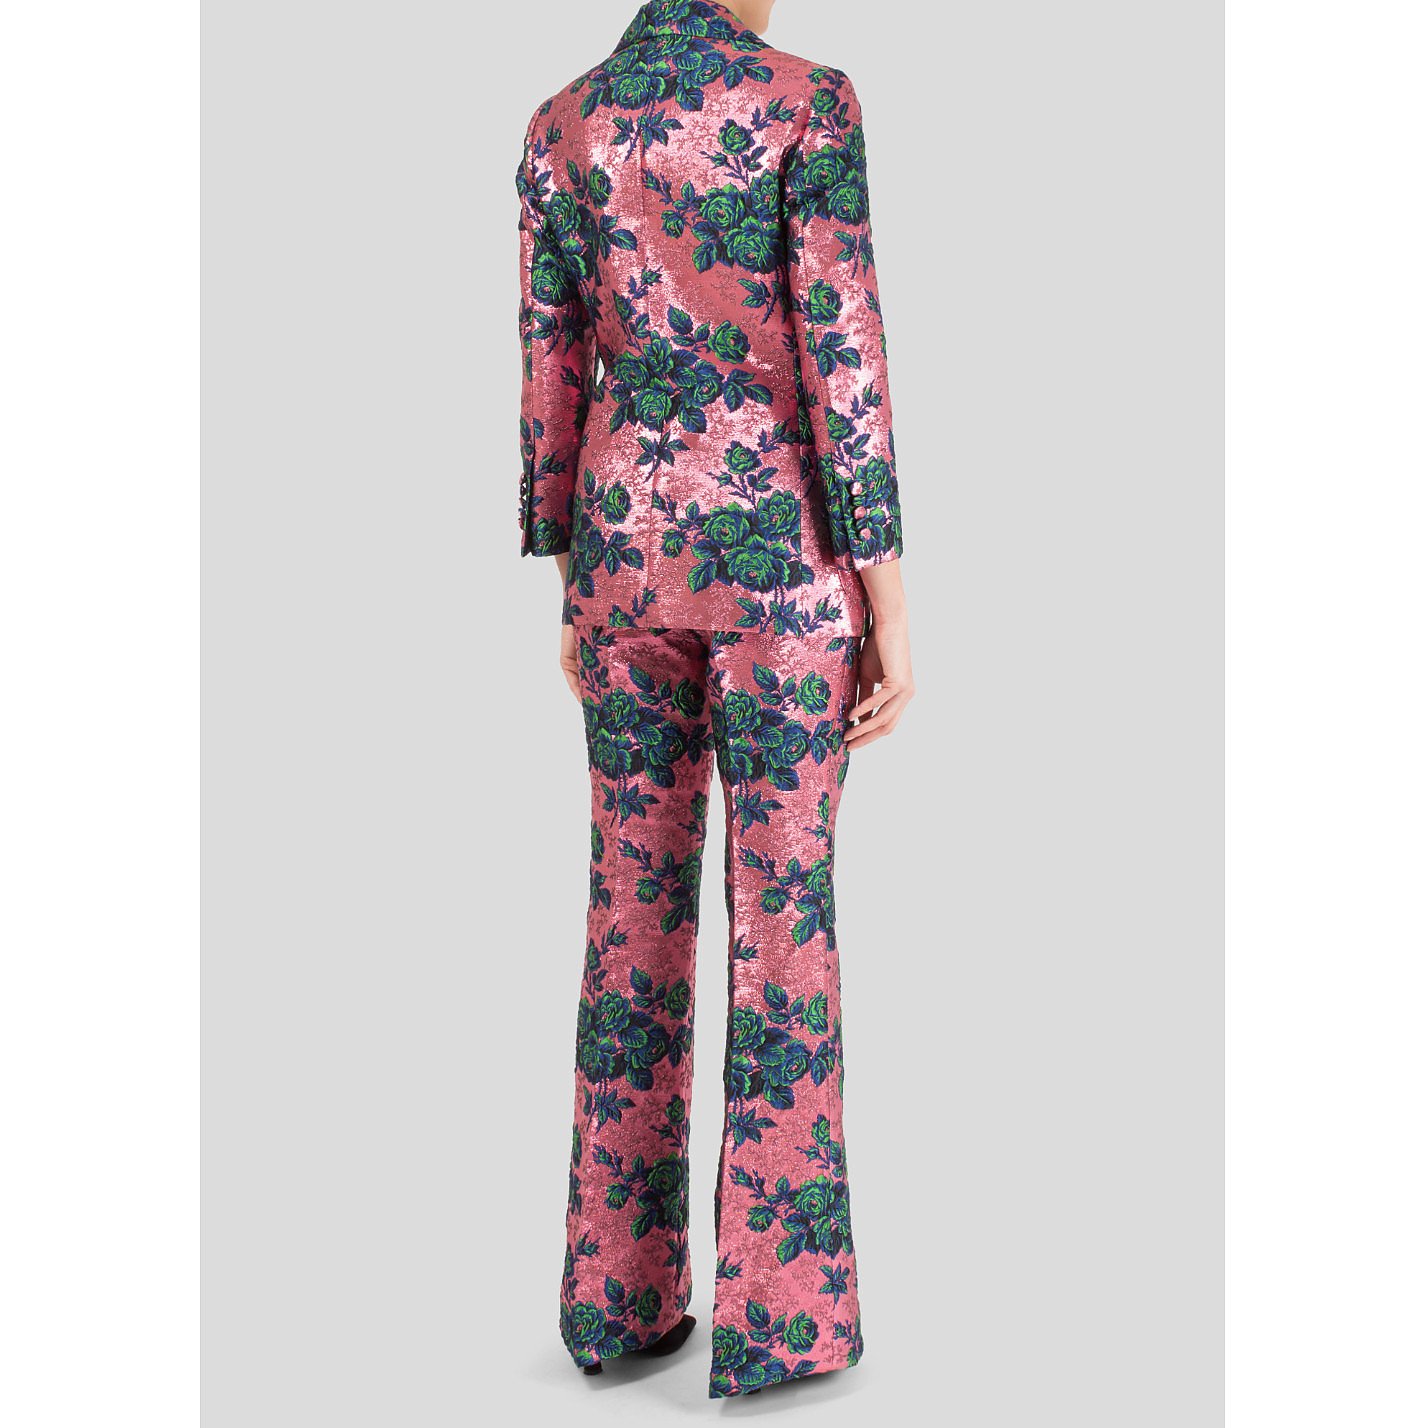 gucci floral pants mens